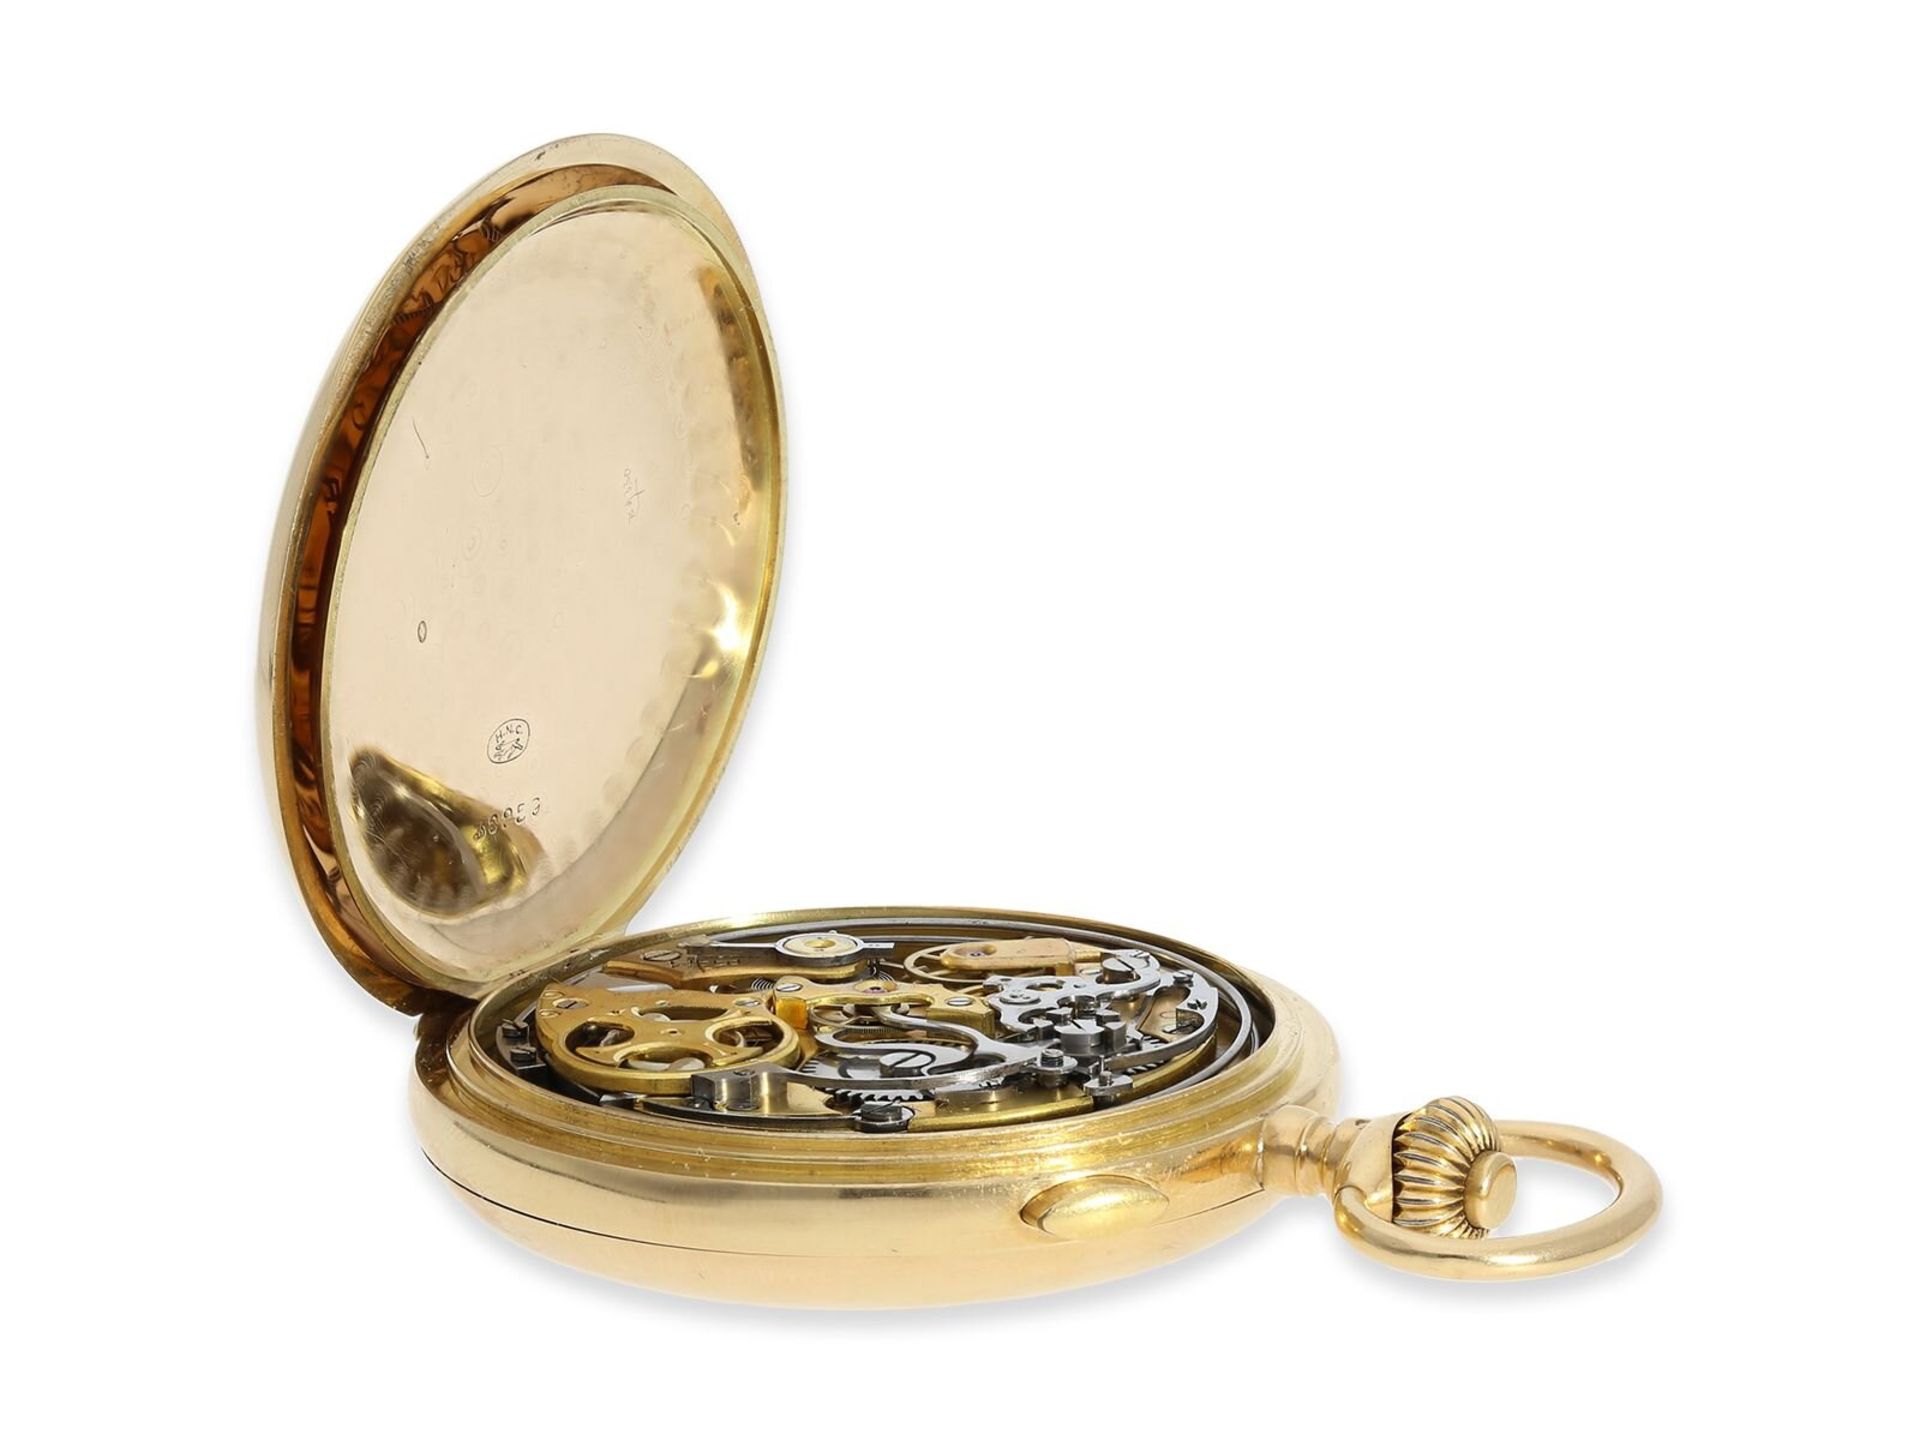 Taschenuhr: schwere rotgoldene Savonnette mit Repetition und Chronograph, 18K Gold, signiert Horloge - Image 4 of 12